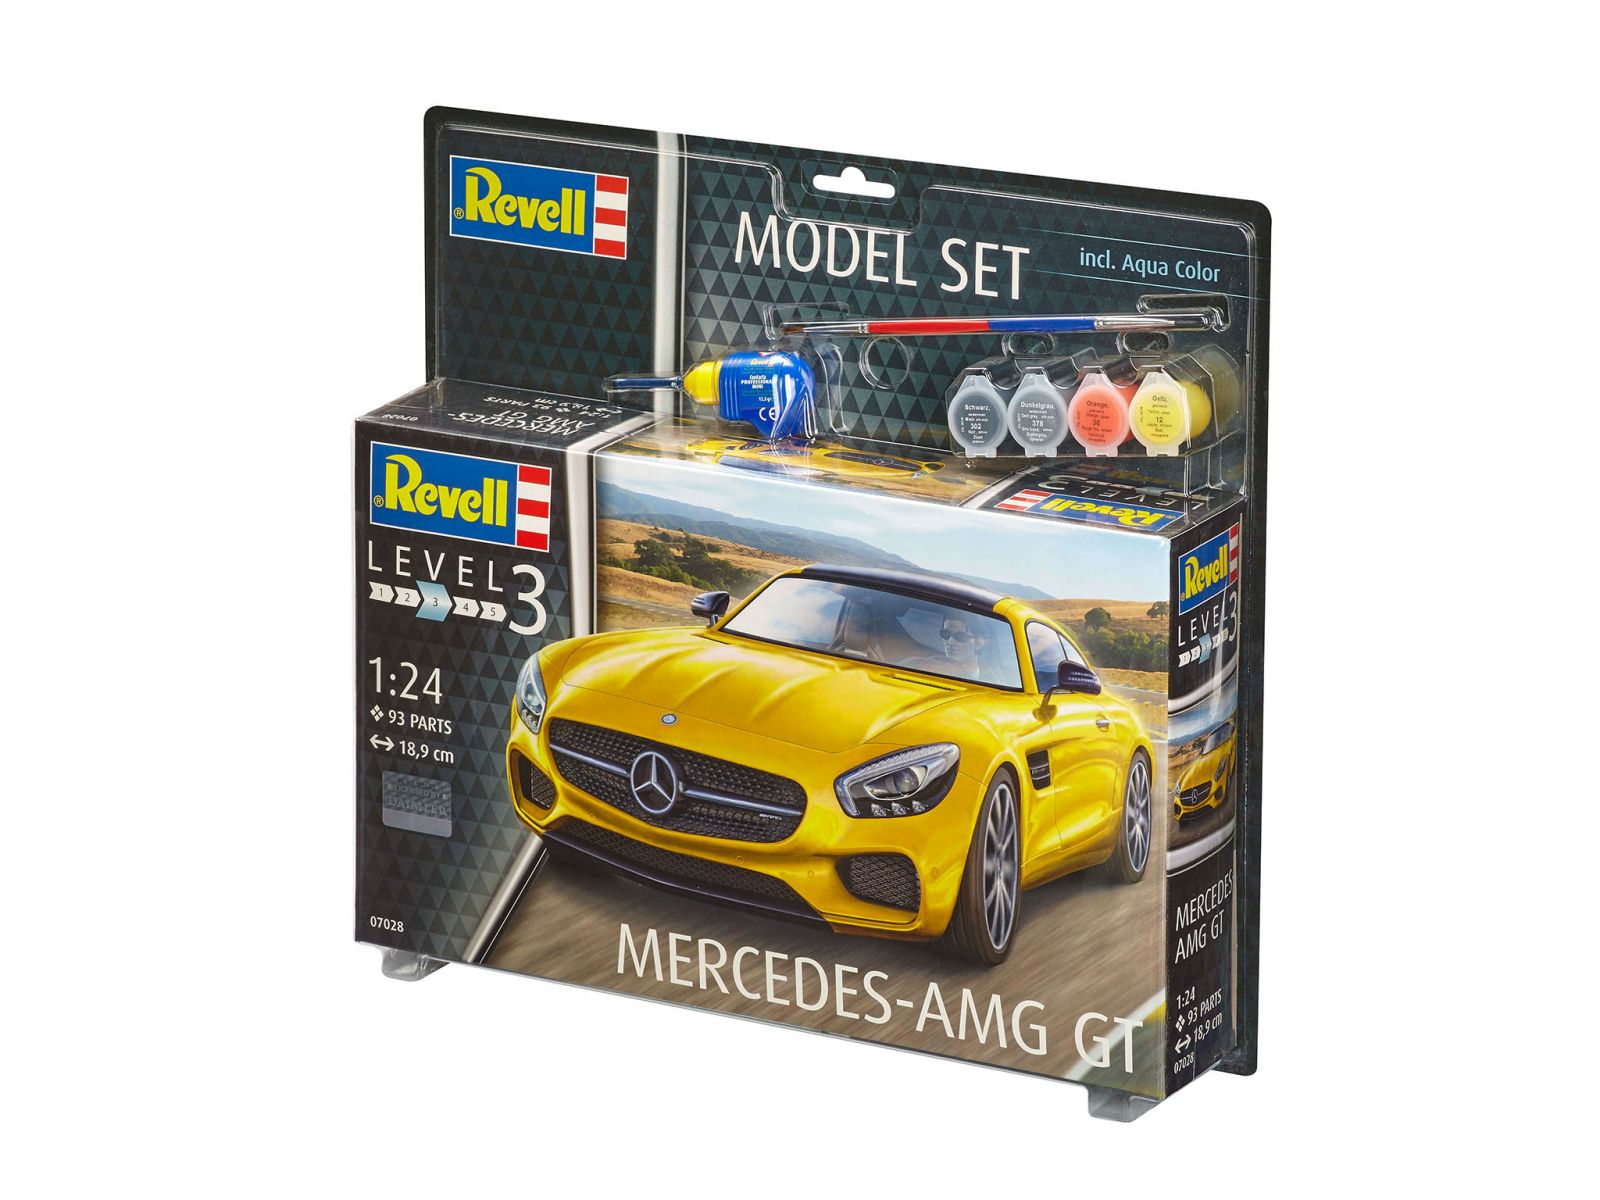 Revell 67028 - Model Set Mercedes-AMG GT